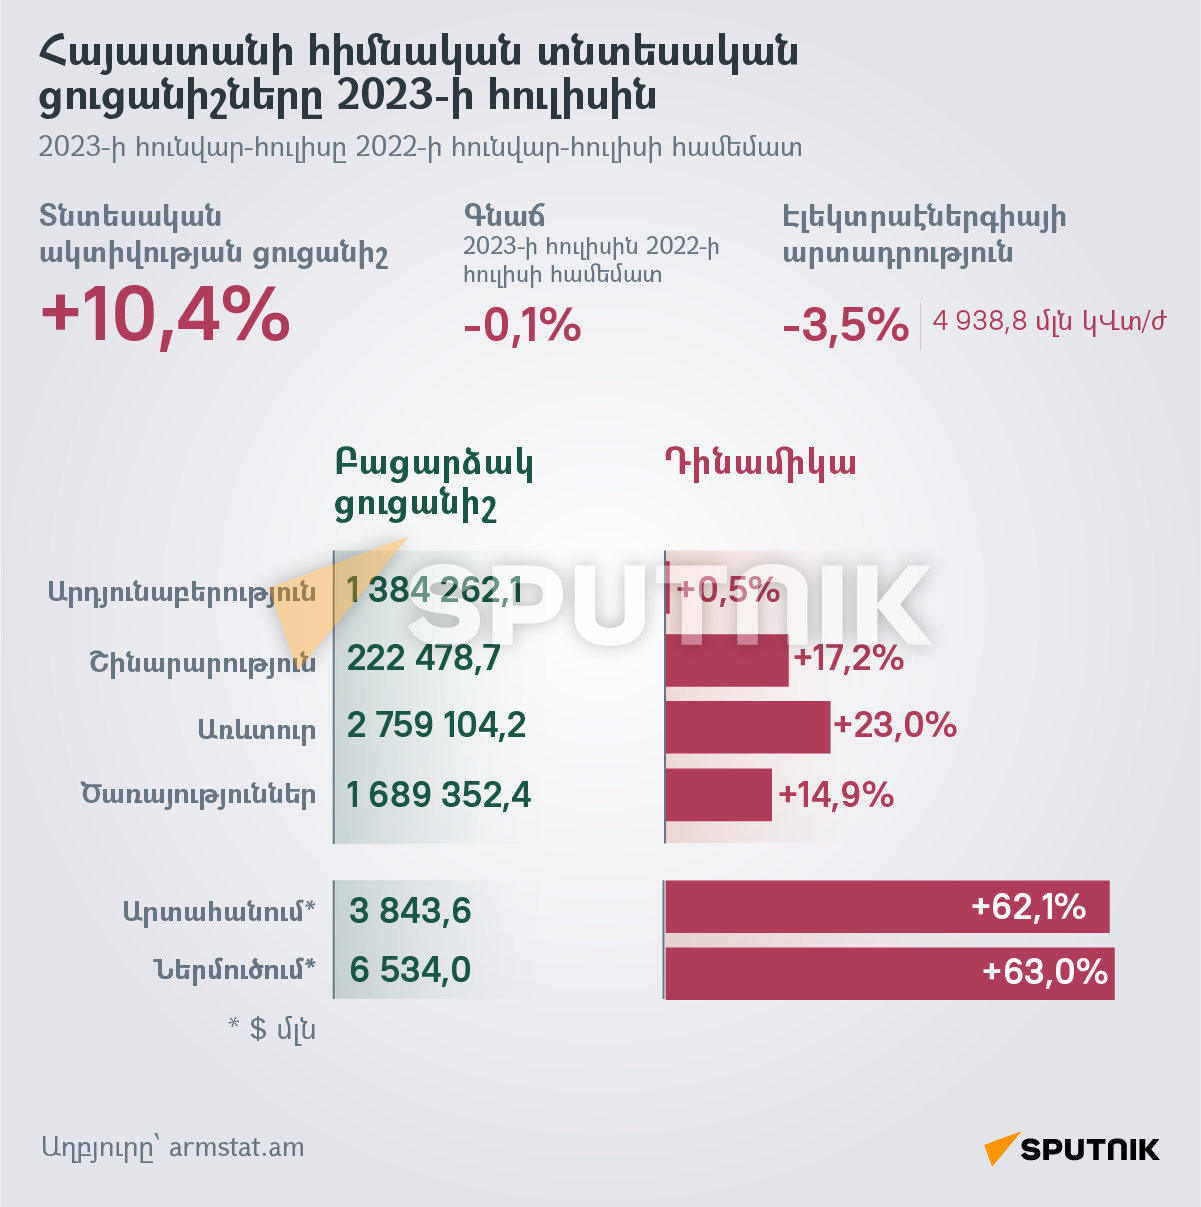 Հայաստանի հիմնական տնտեսական ցուցանիշները 2023-ի հուլիսին - Sputnik Արմենիա